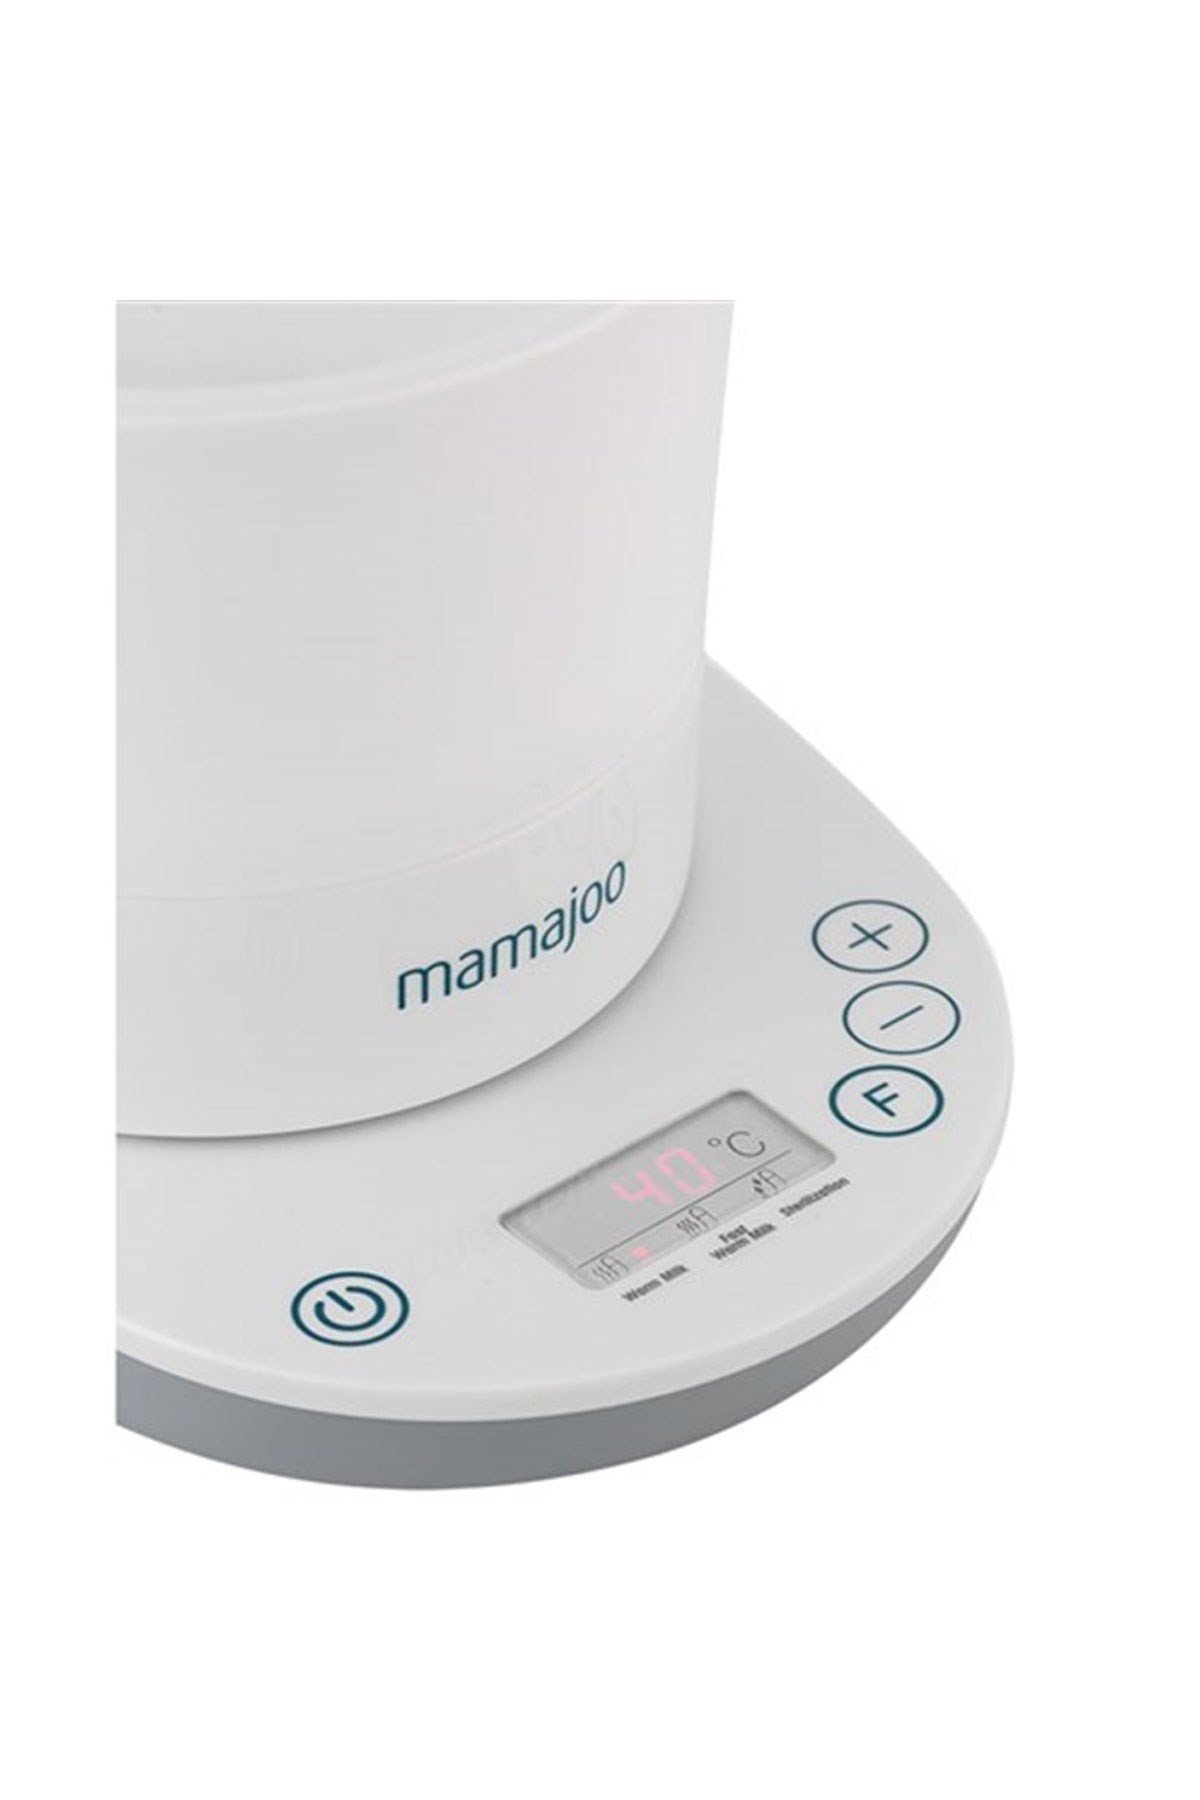 Mamajoo 3 İşlevli Buhar Sterilizatörü & Biberon Isıtıcı Mamajoo Gold Biberon 250ml Hediye